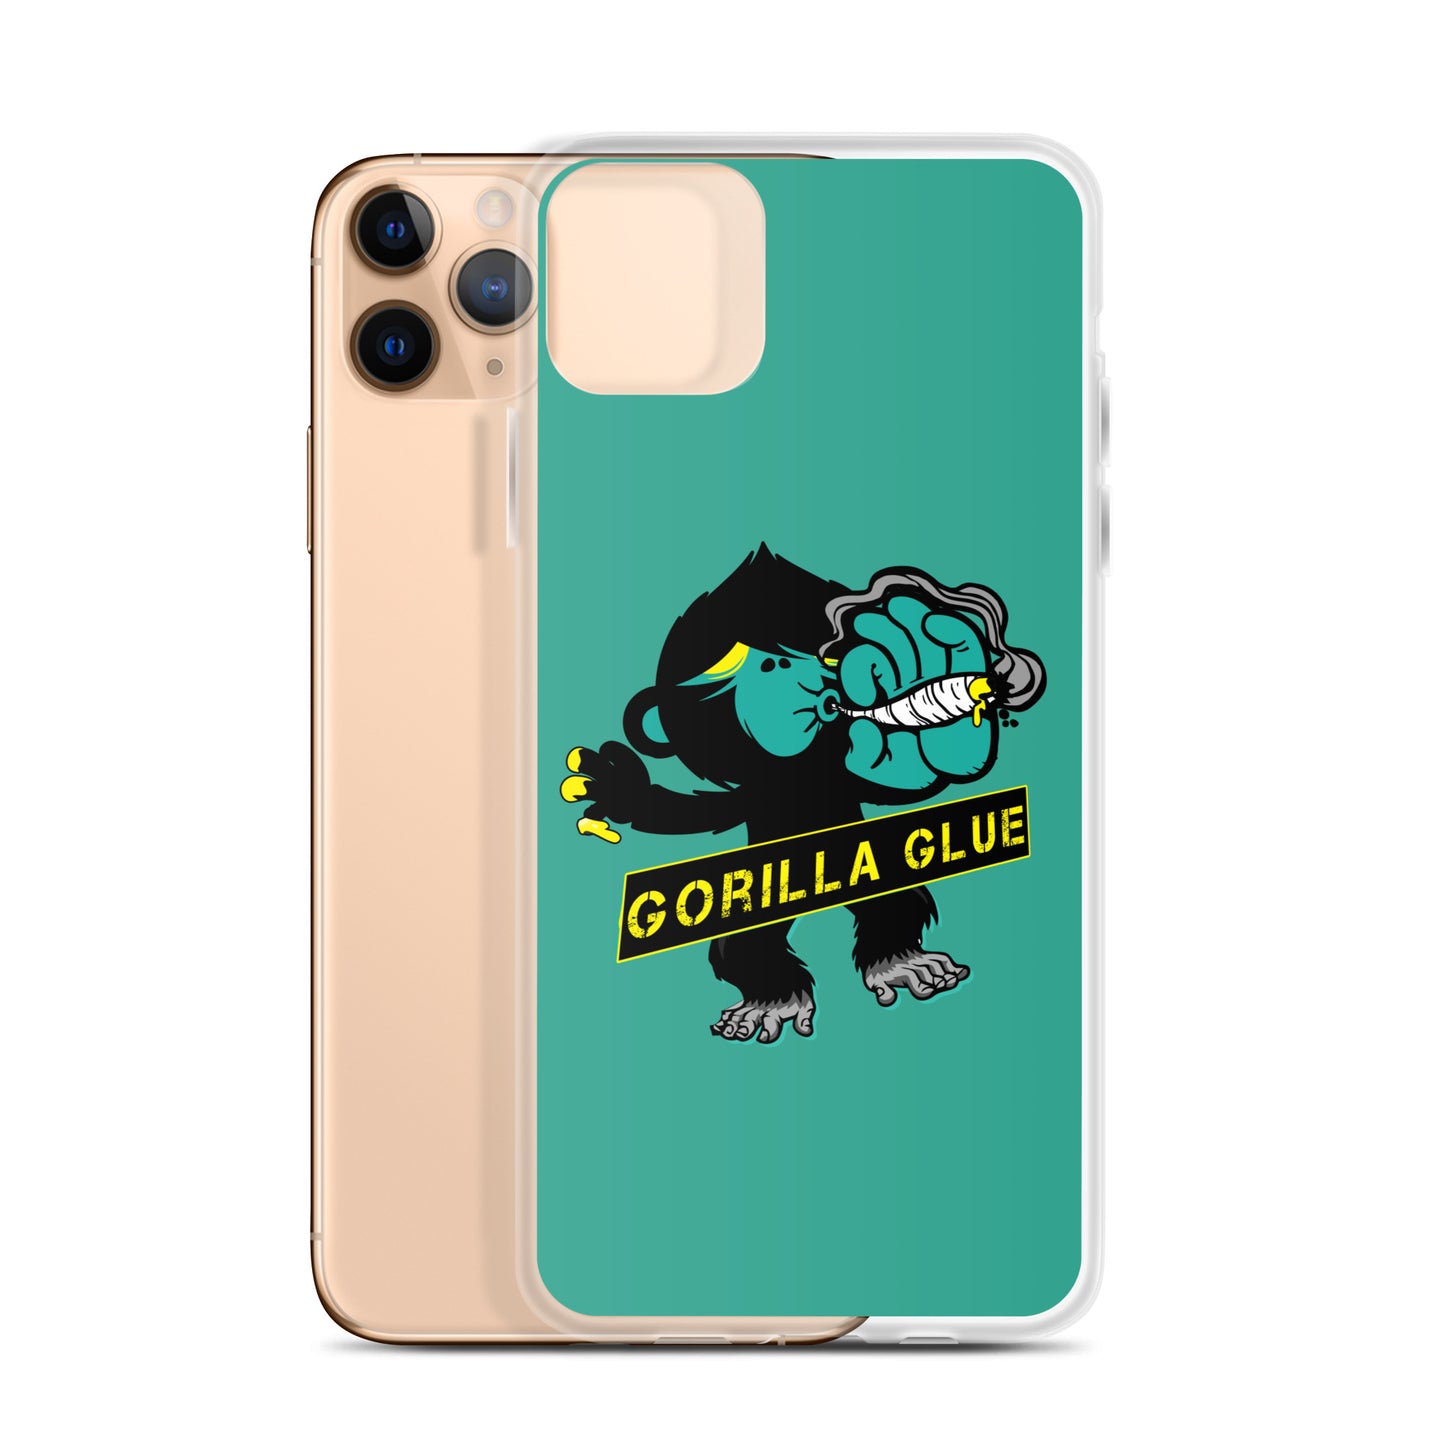 "Gorilla Glue" iPhone case